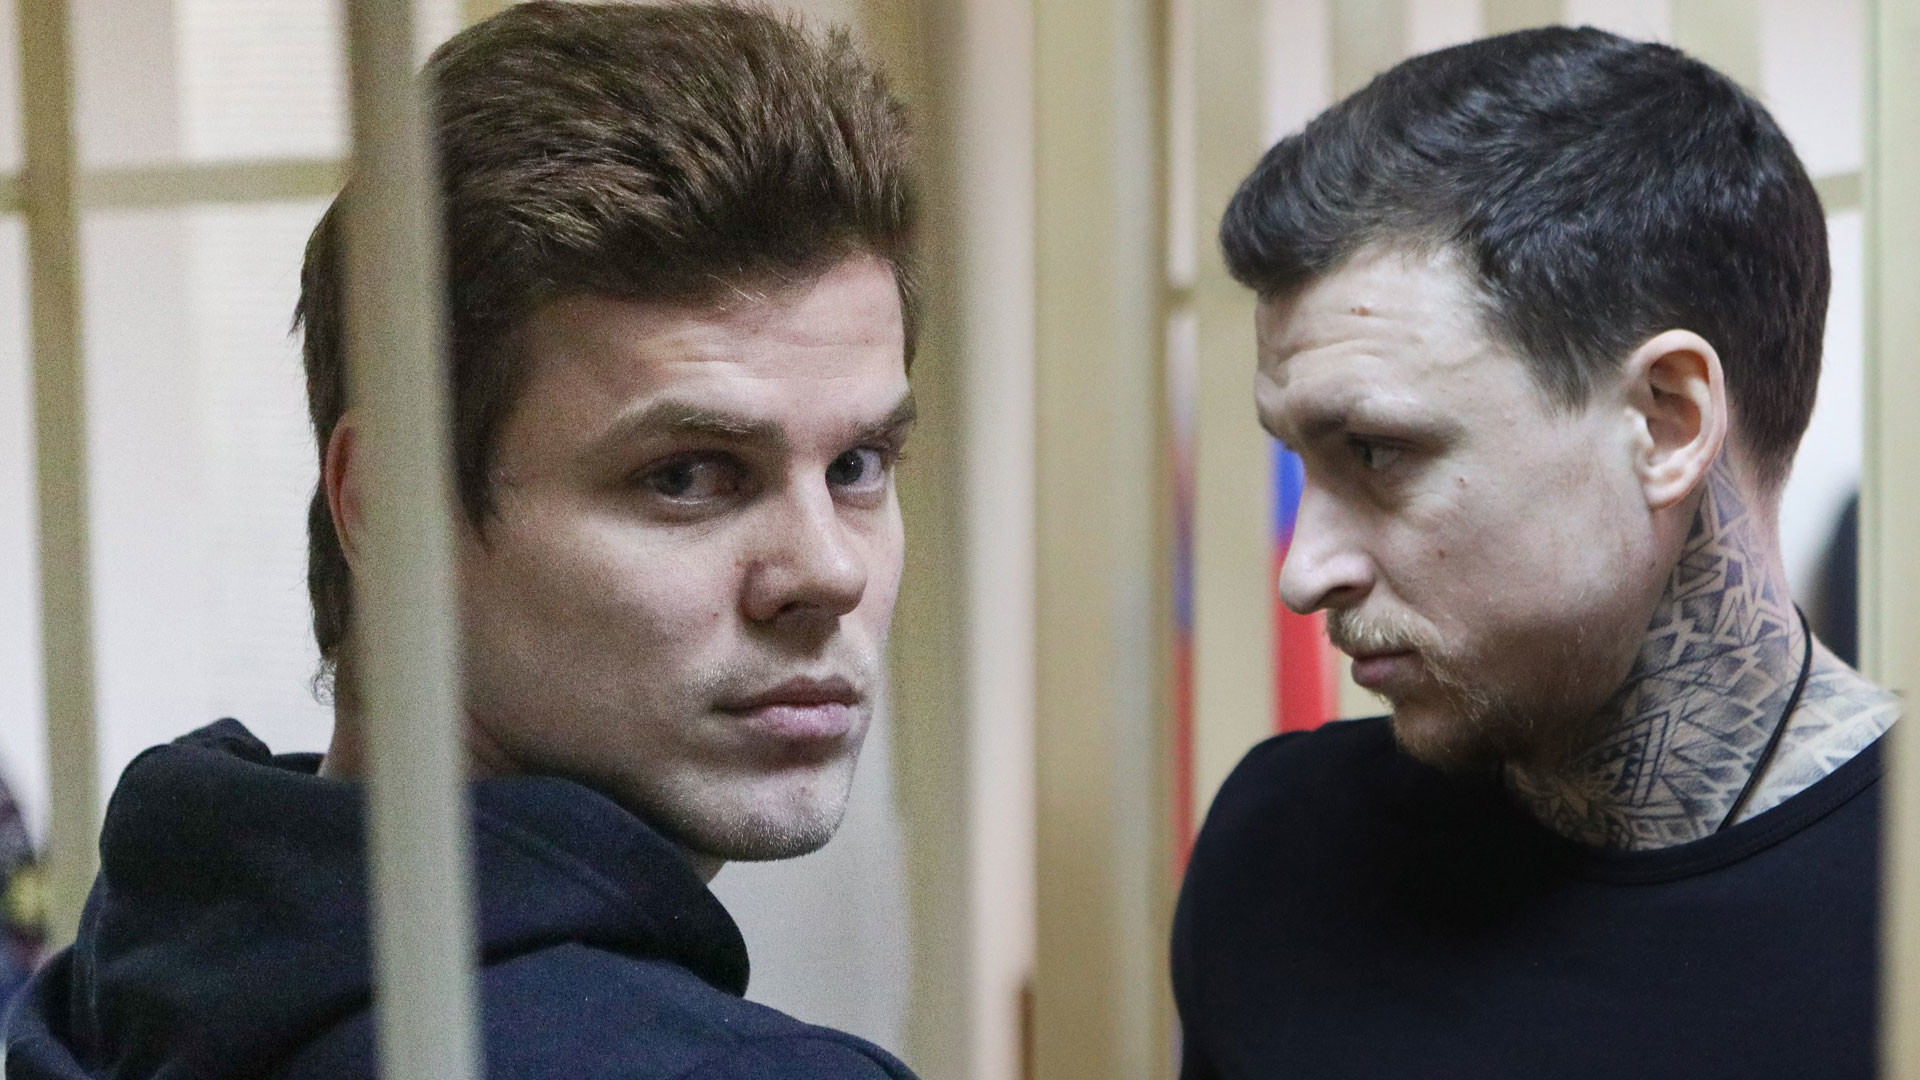 Александр Кокорин и Павел Мамаев. Фото: © Агентство городских новостей "Москва" / Никеричев Андрей
